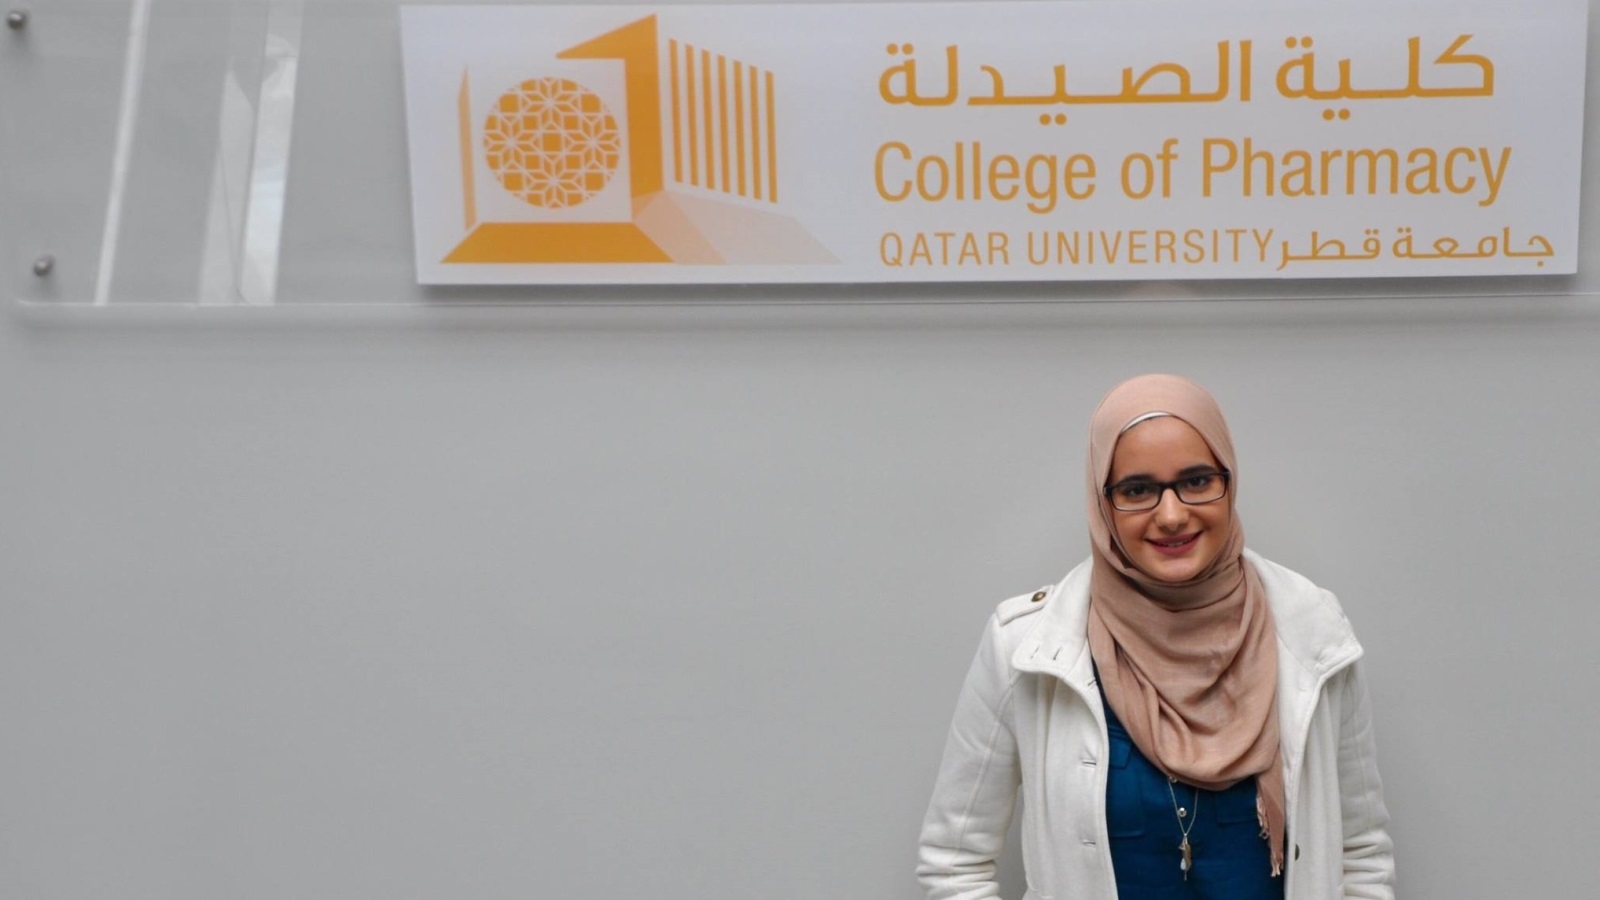 بكالوريوس الصيدلة مخصص للطالبات الإناث فقط من داخل وخارج دولة قطر، وتشترط الكلية اجتياز امتحان القبول للكلية والمعروف باسم (PCAT)